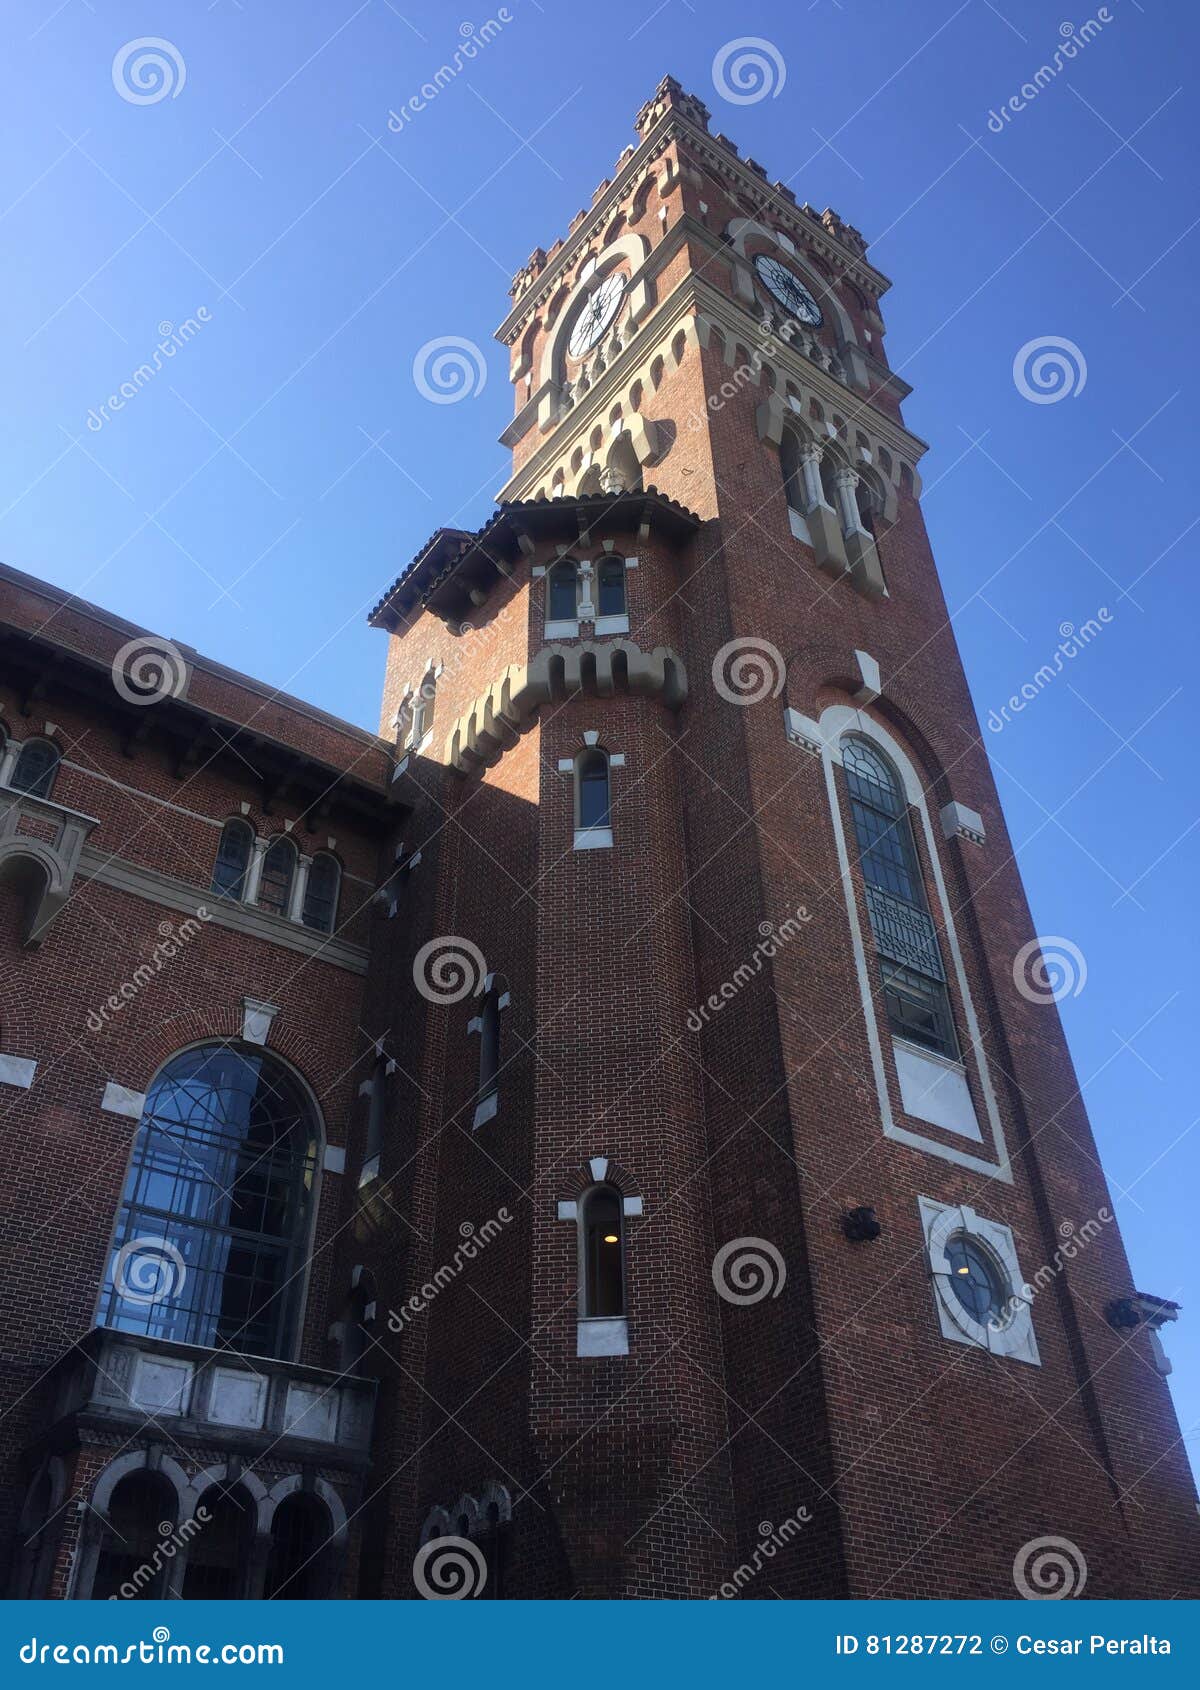 clock tower in usina del arte